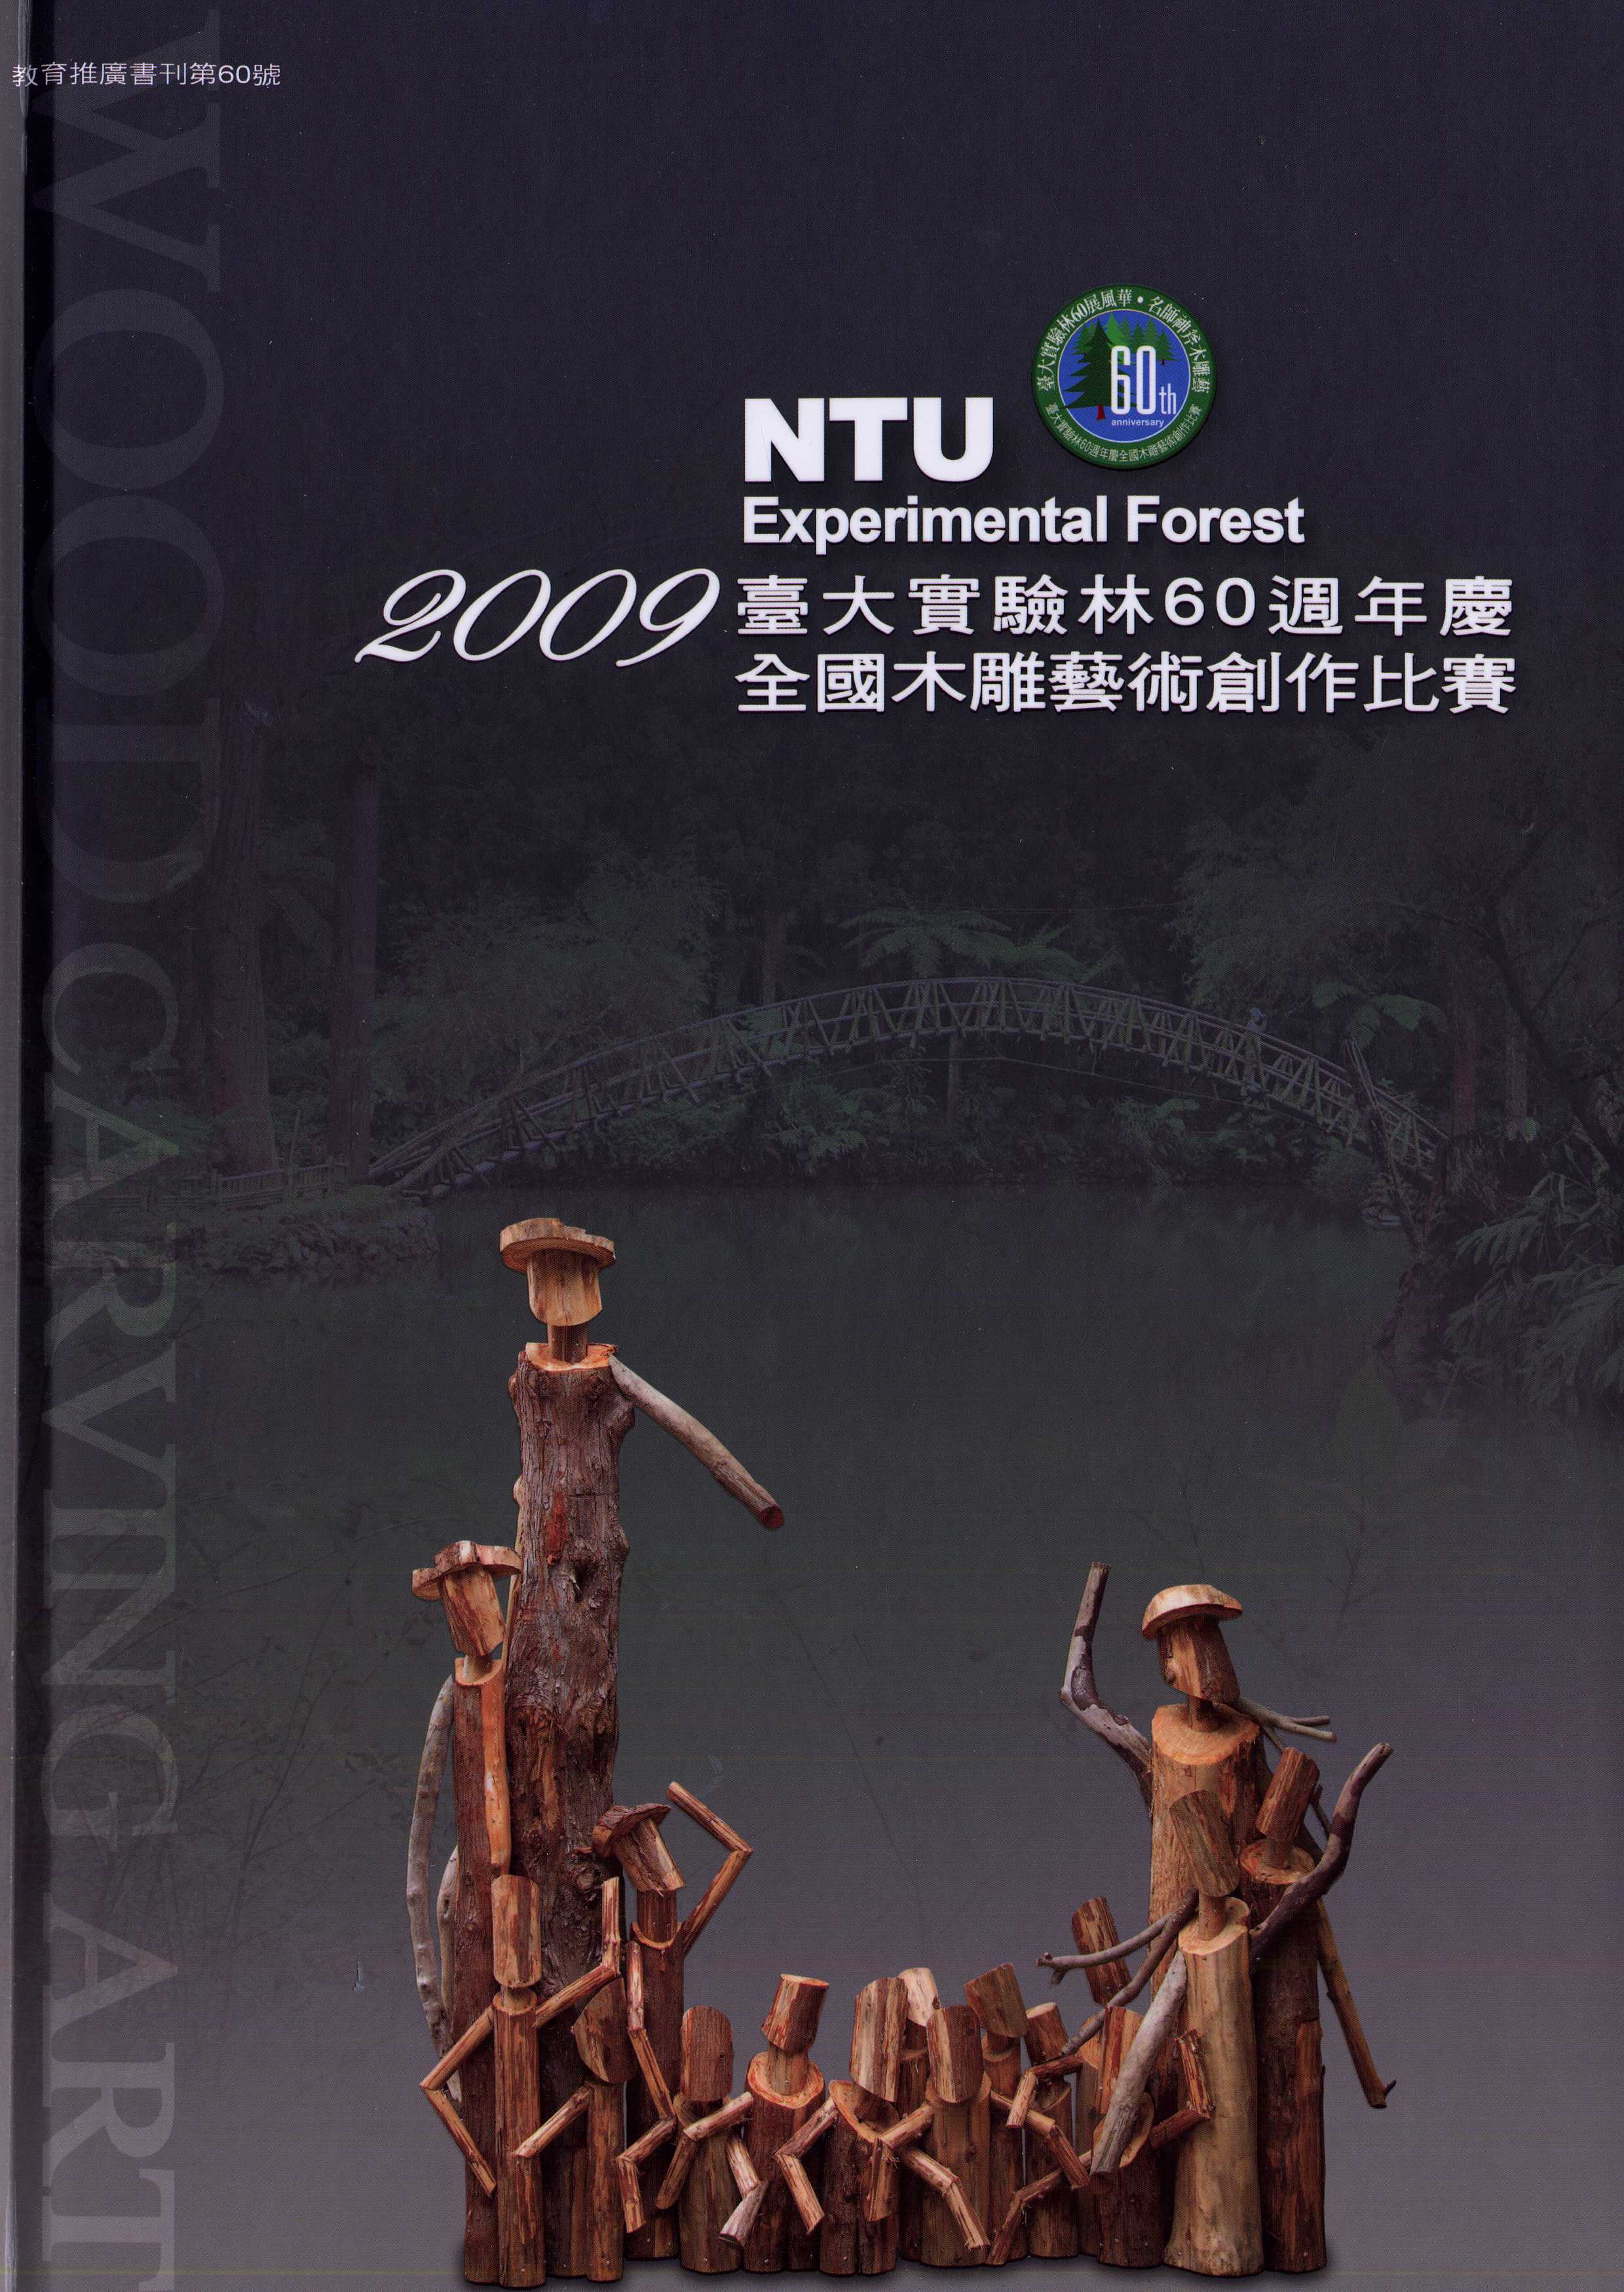 2009年臺大實驗林60週年慶木雕藝術創作比賽